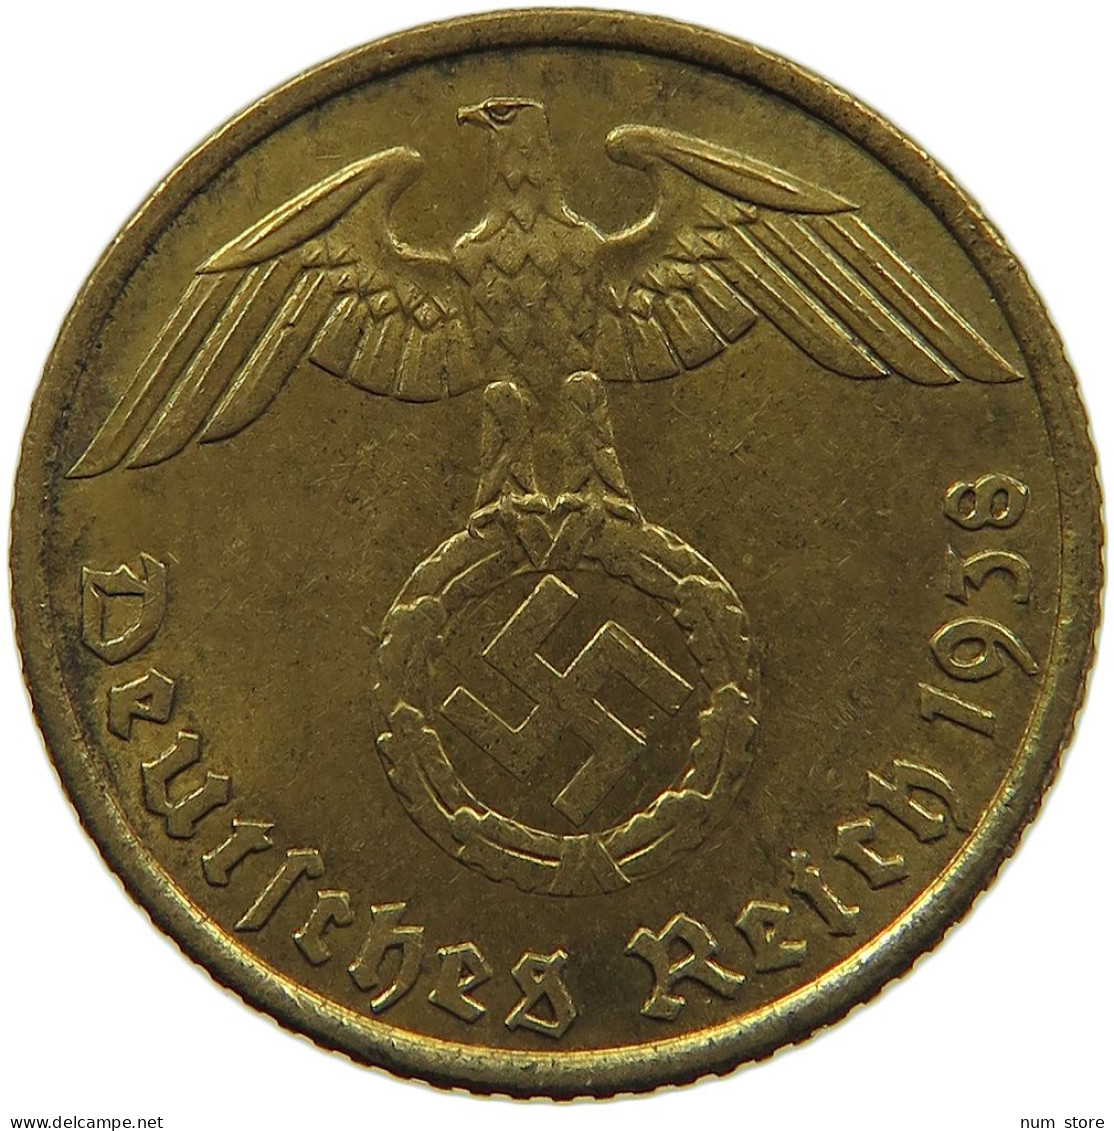 GERMANY 5 REICHSPFENNIG 1938 A #s091 0641 - 5 Reichspfennig